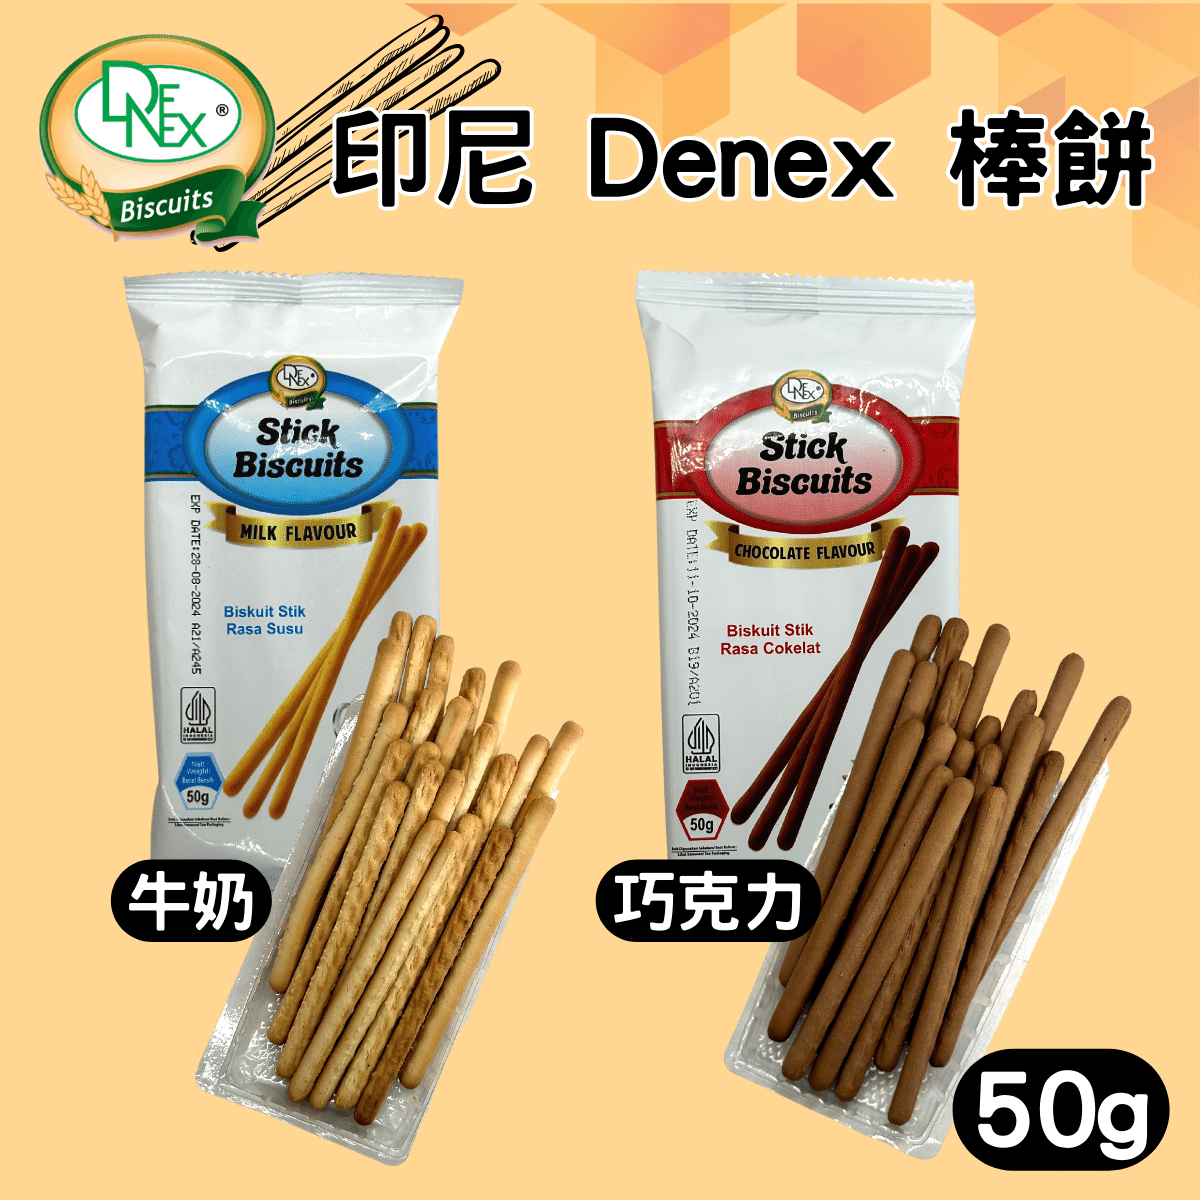 印尼 Denex 棒餅 牛奶棒 巧克力棒 零食 餅乾 [928福利社] ★7-11超取299免運